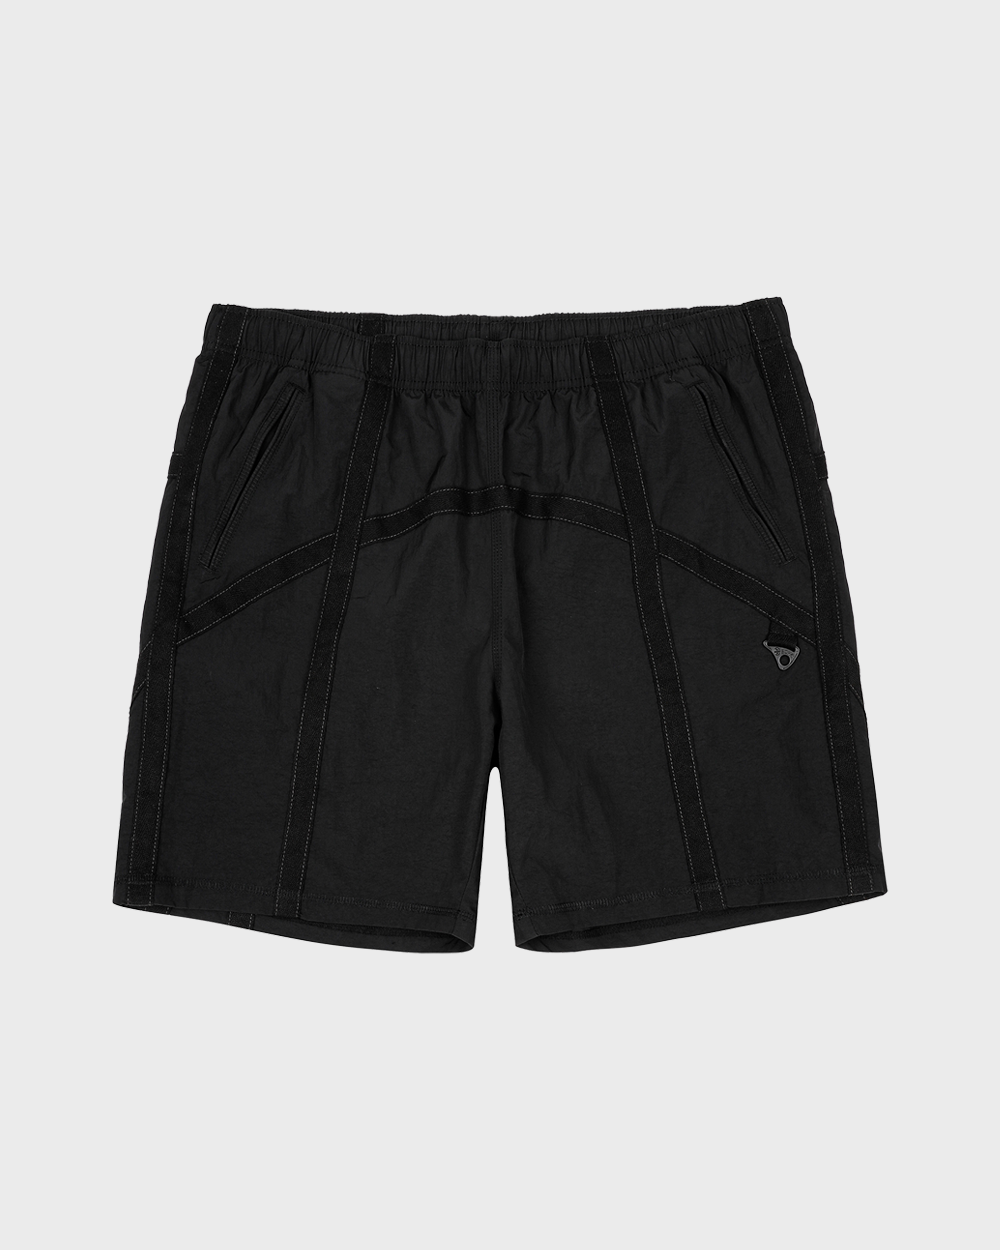 Camper’s Shorts for Light Hiking (Black)